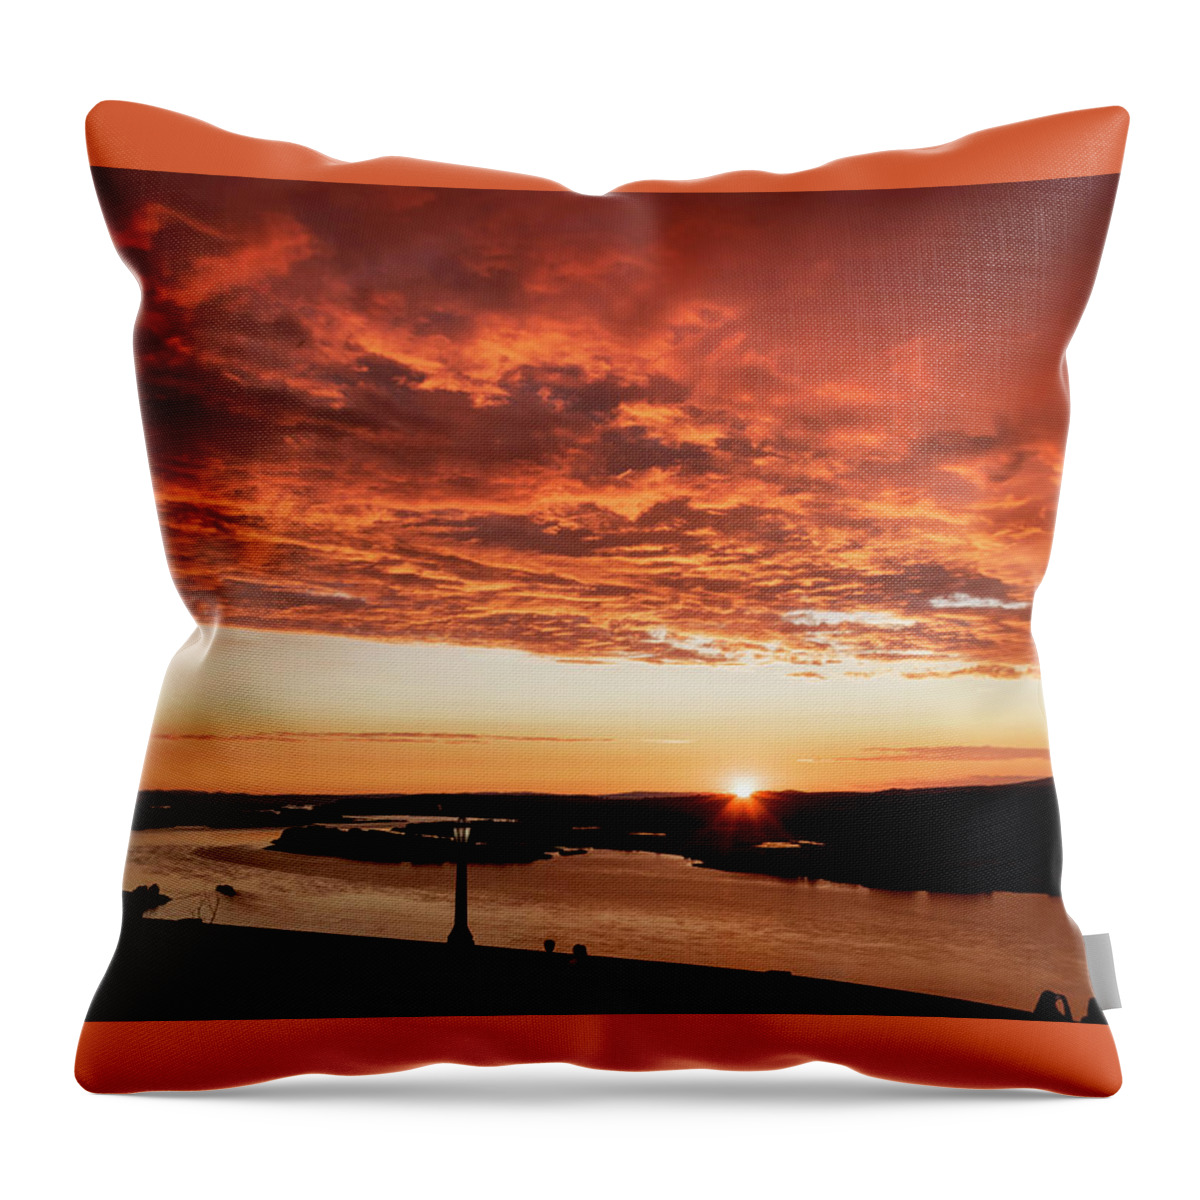 Sunset From Vista House Throw Pillow featuring the photograph Sunset from Vista House by Wes and Dotty Weber